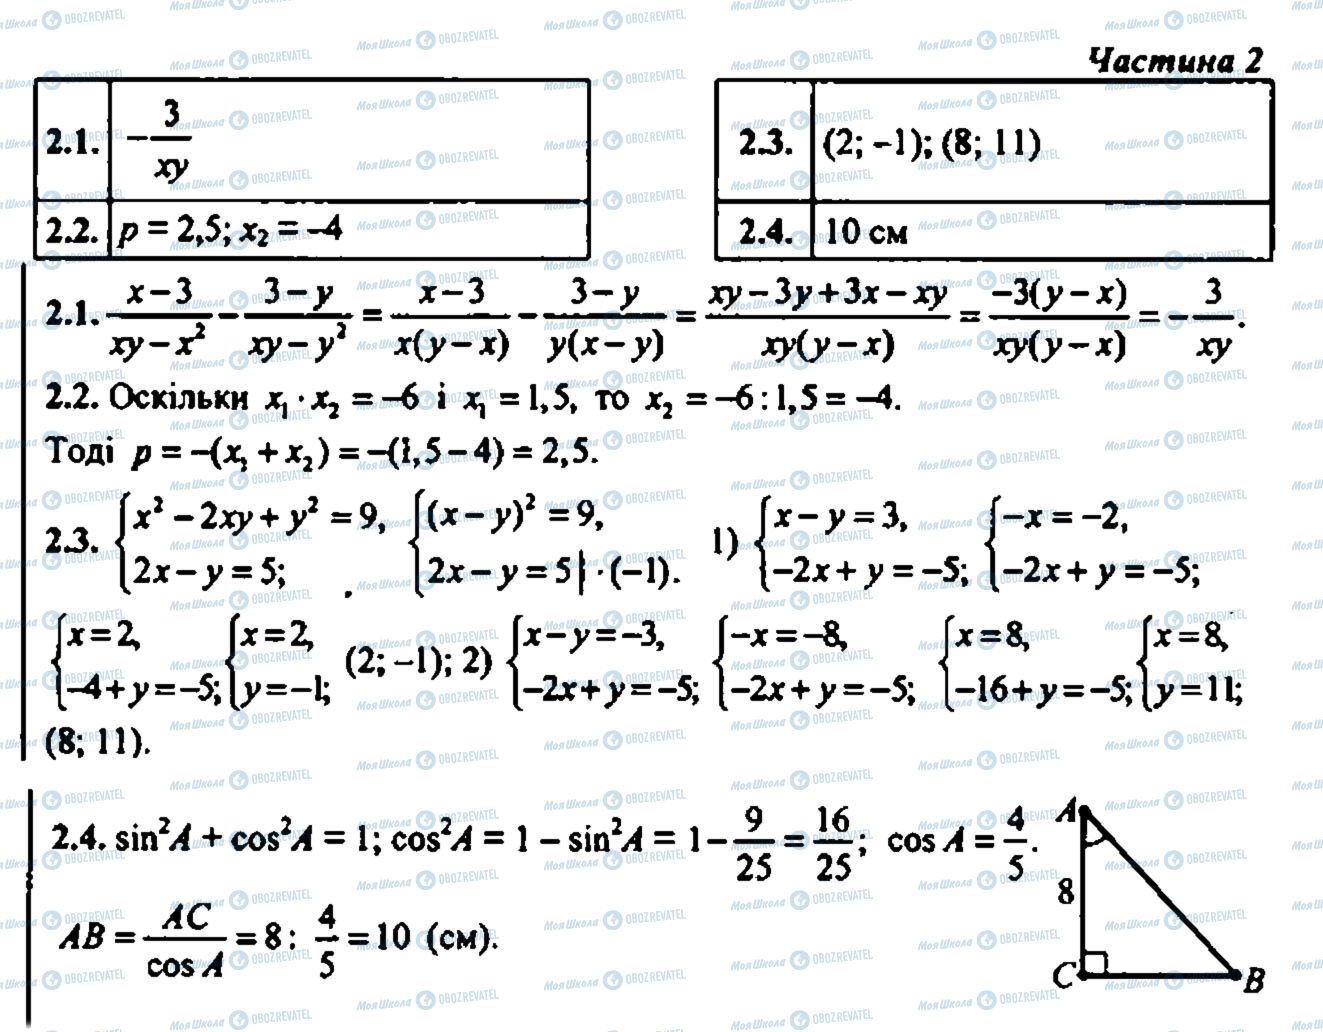 ДПА Математика 9 класс страница 2